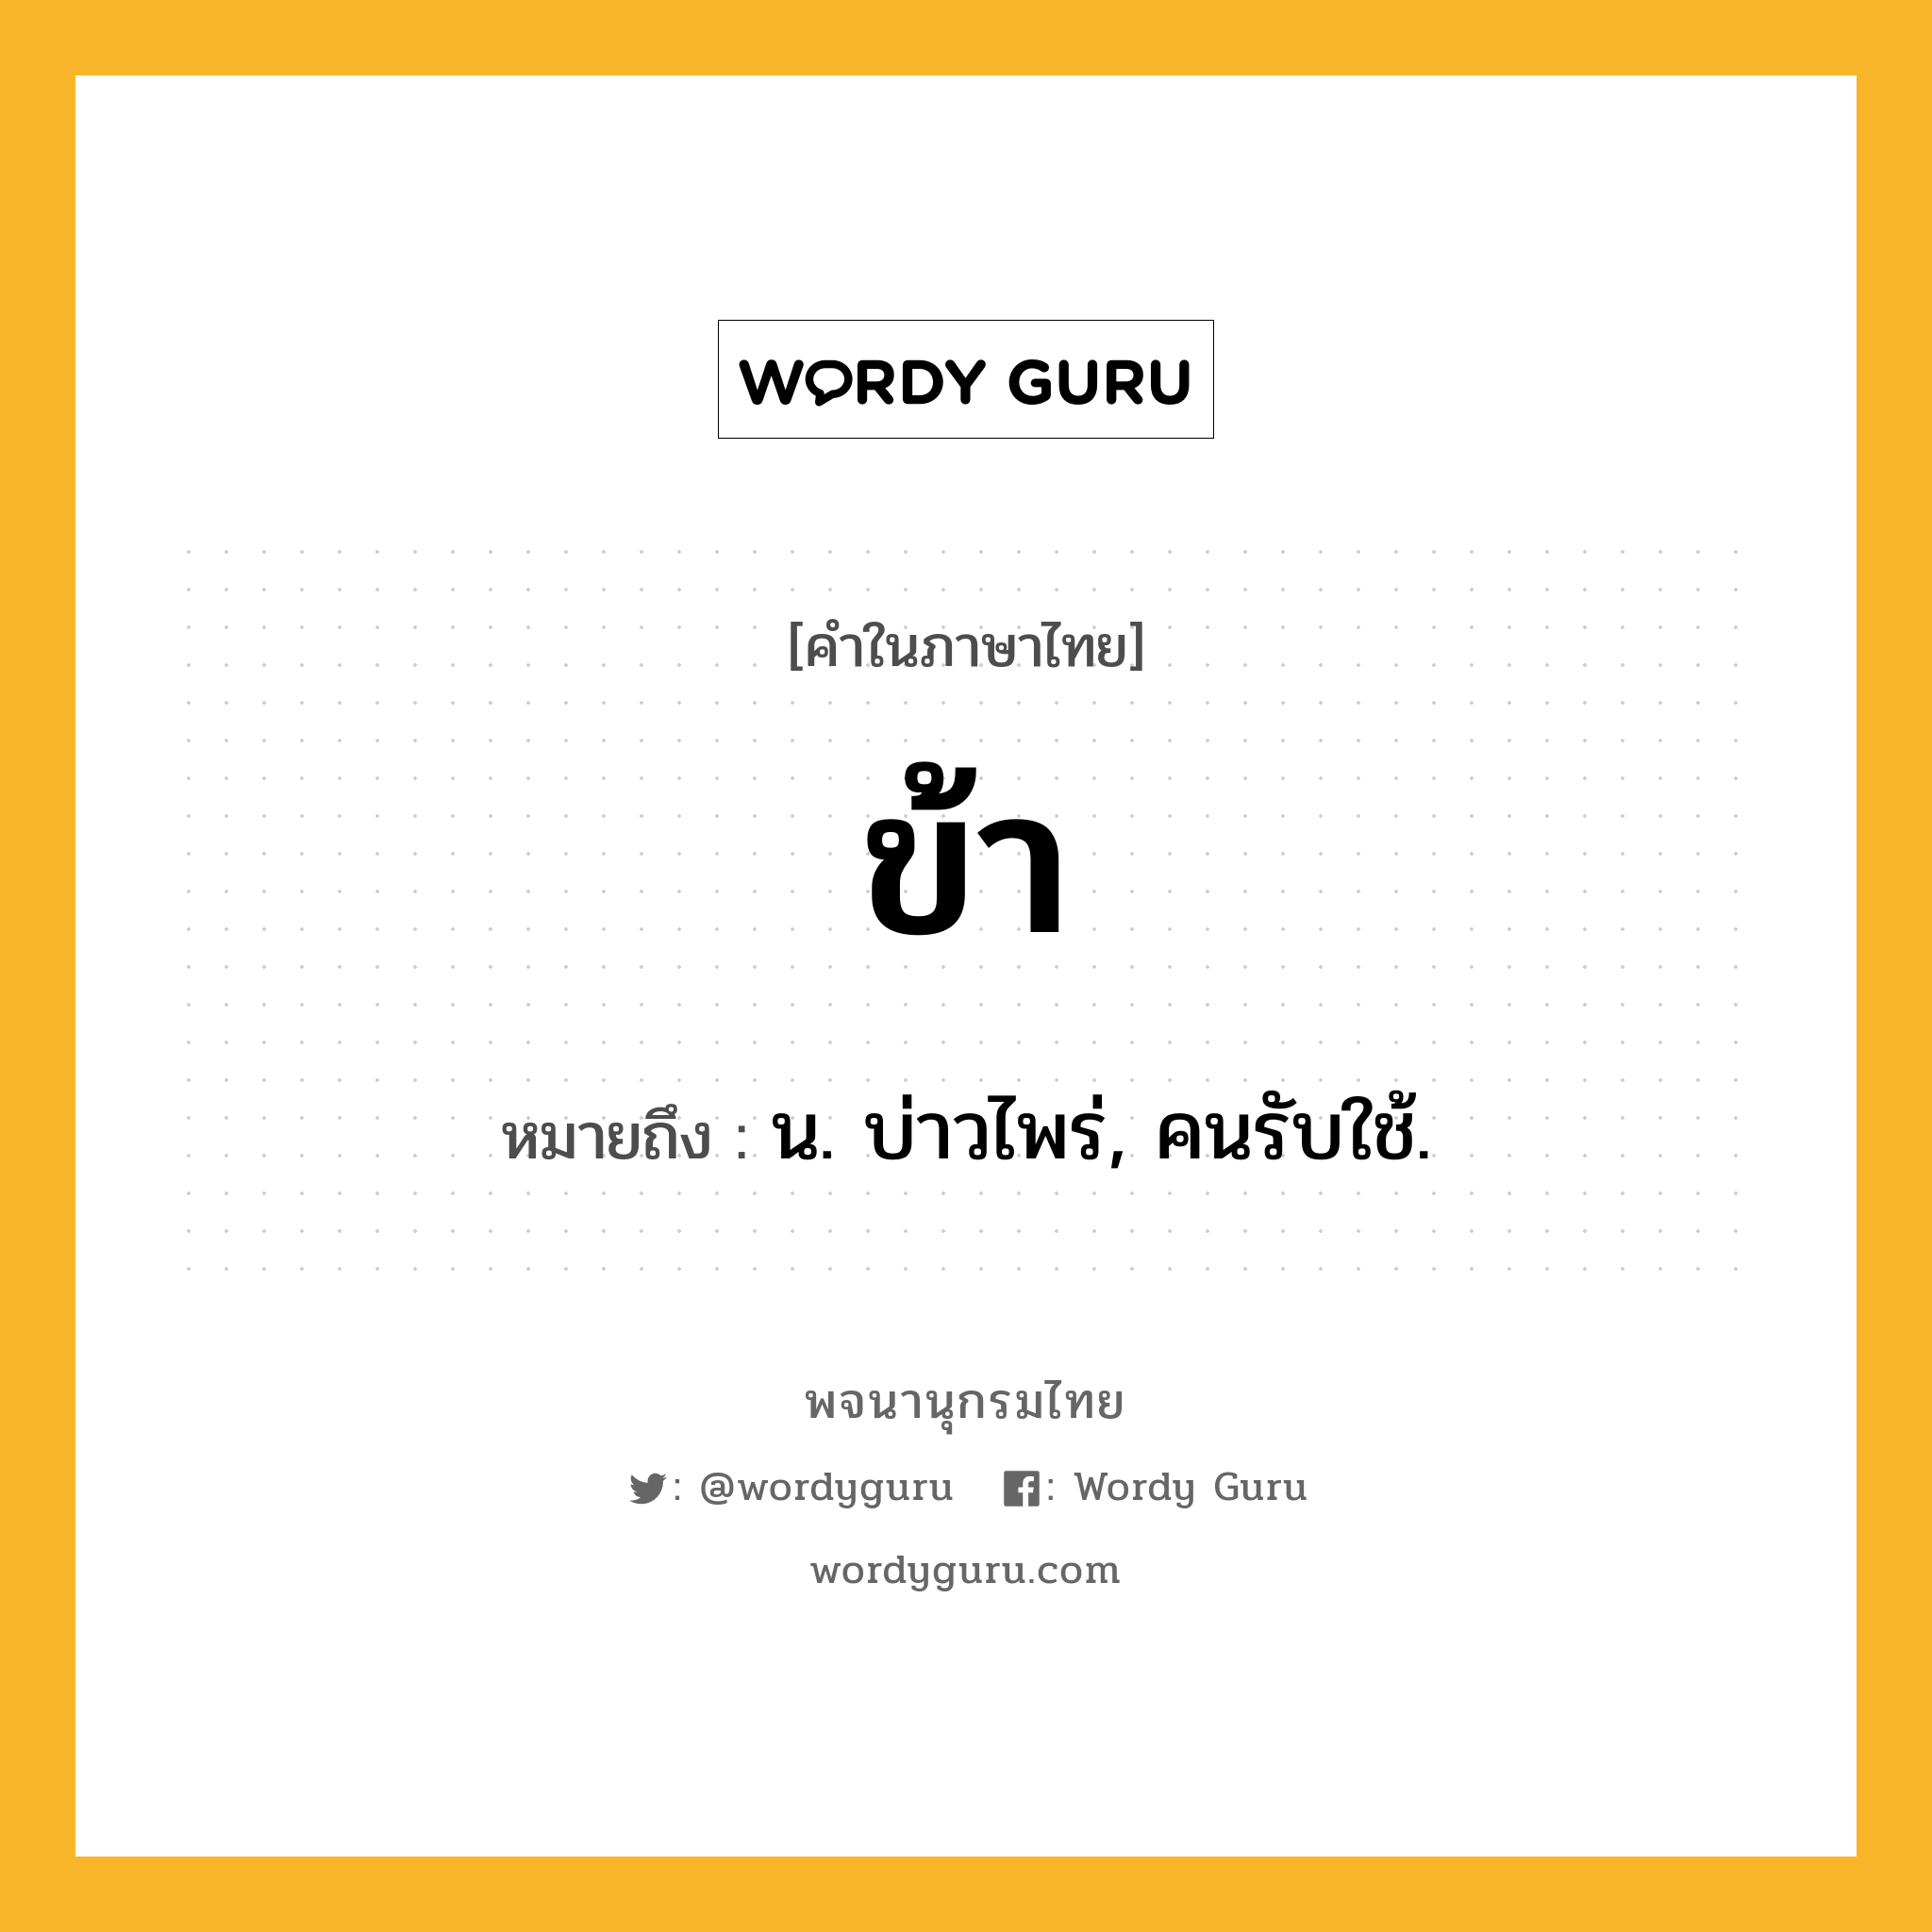 ข้า หมายถึงอะไร?, คำในภาษาไทย ข้า หมายถึง น. บ่าวไพร่, คนรับใช้.